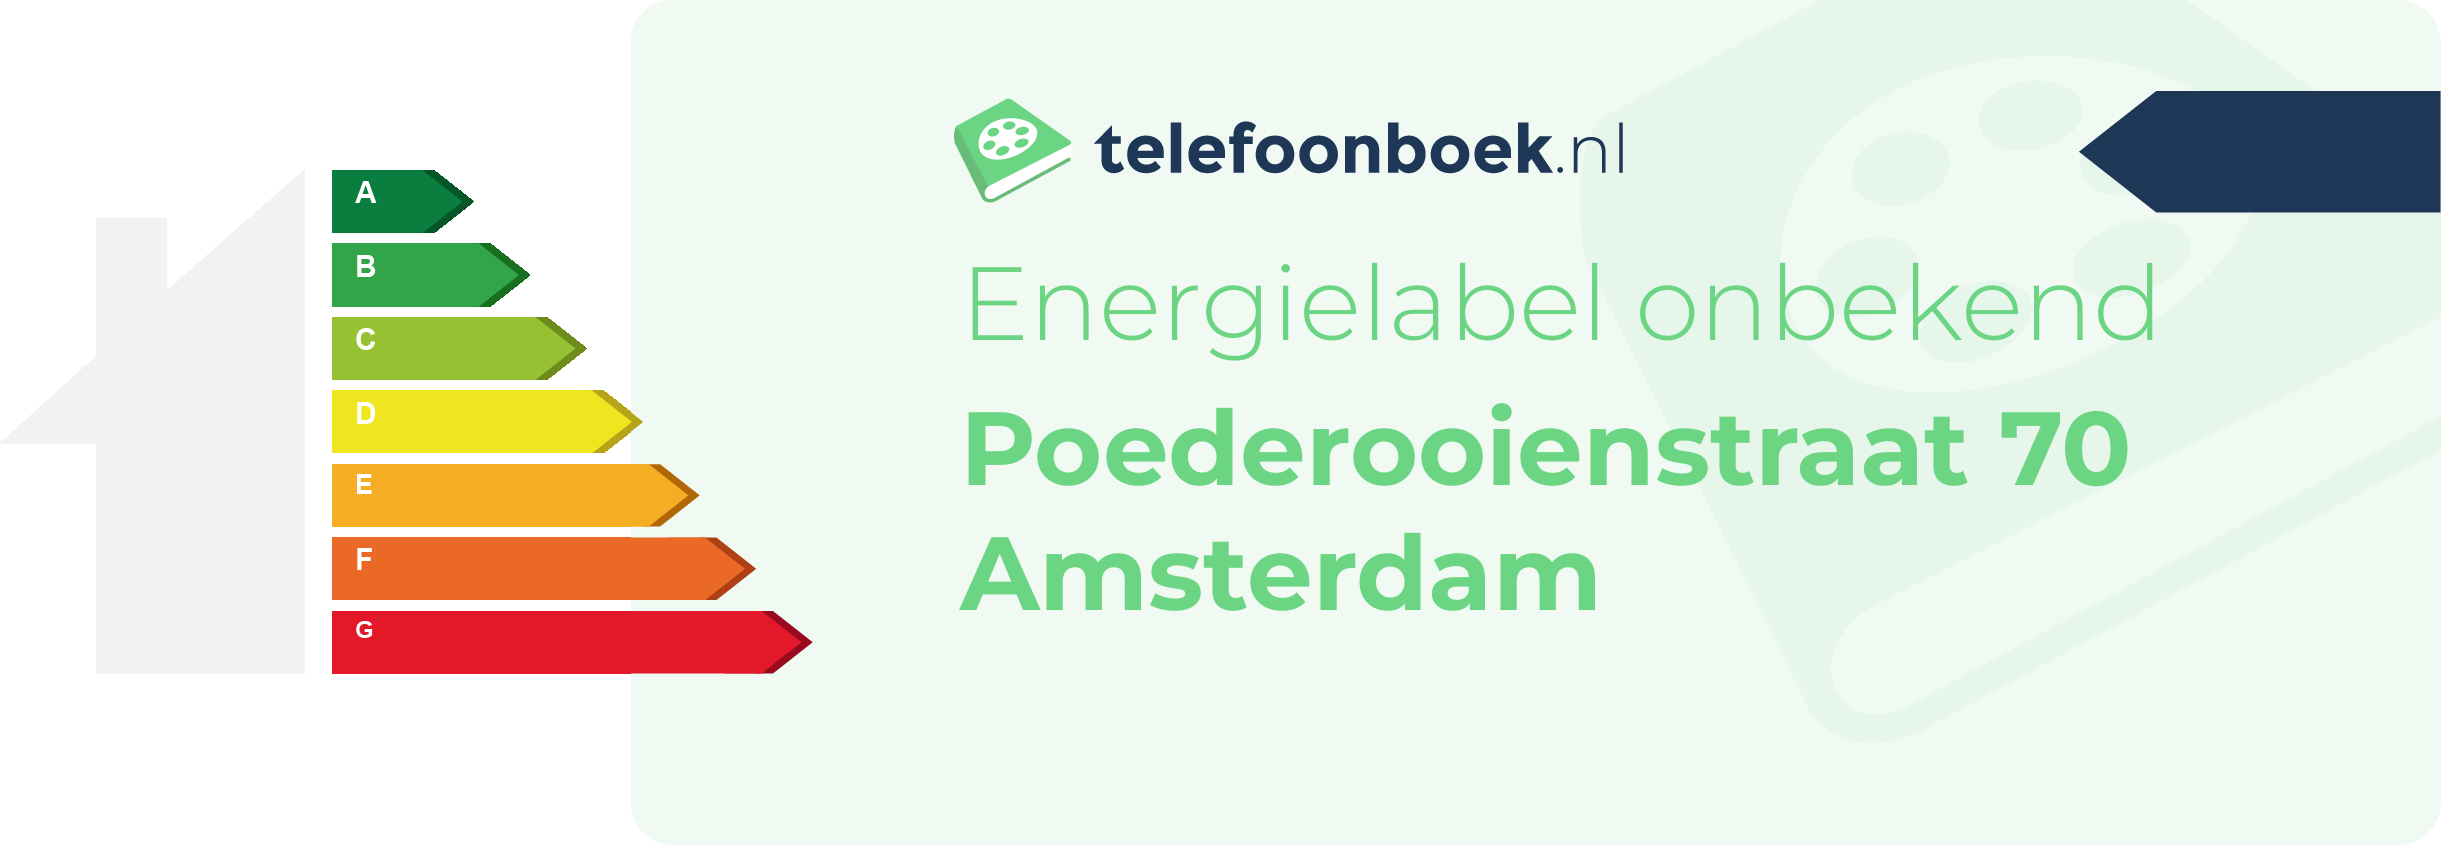 Energielabel Poederooienstraat 70 Amsterdam